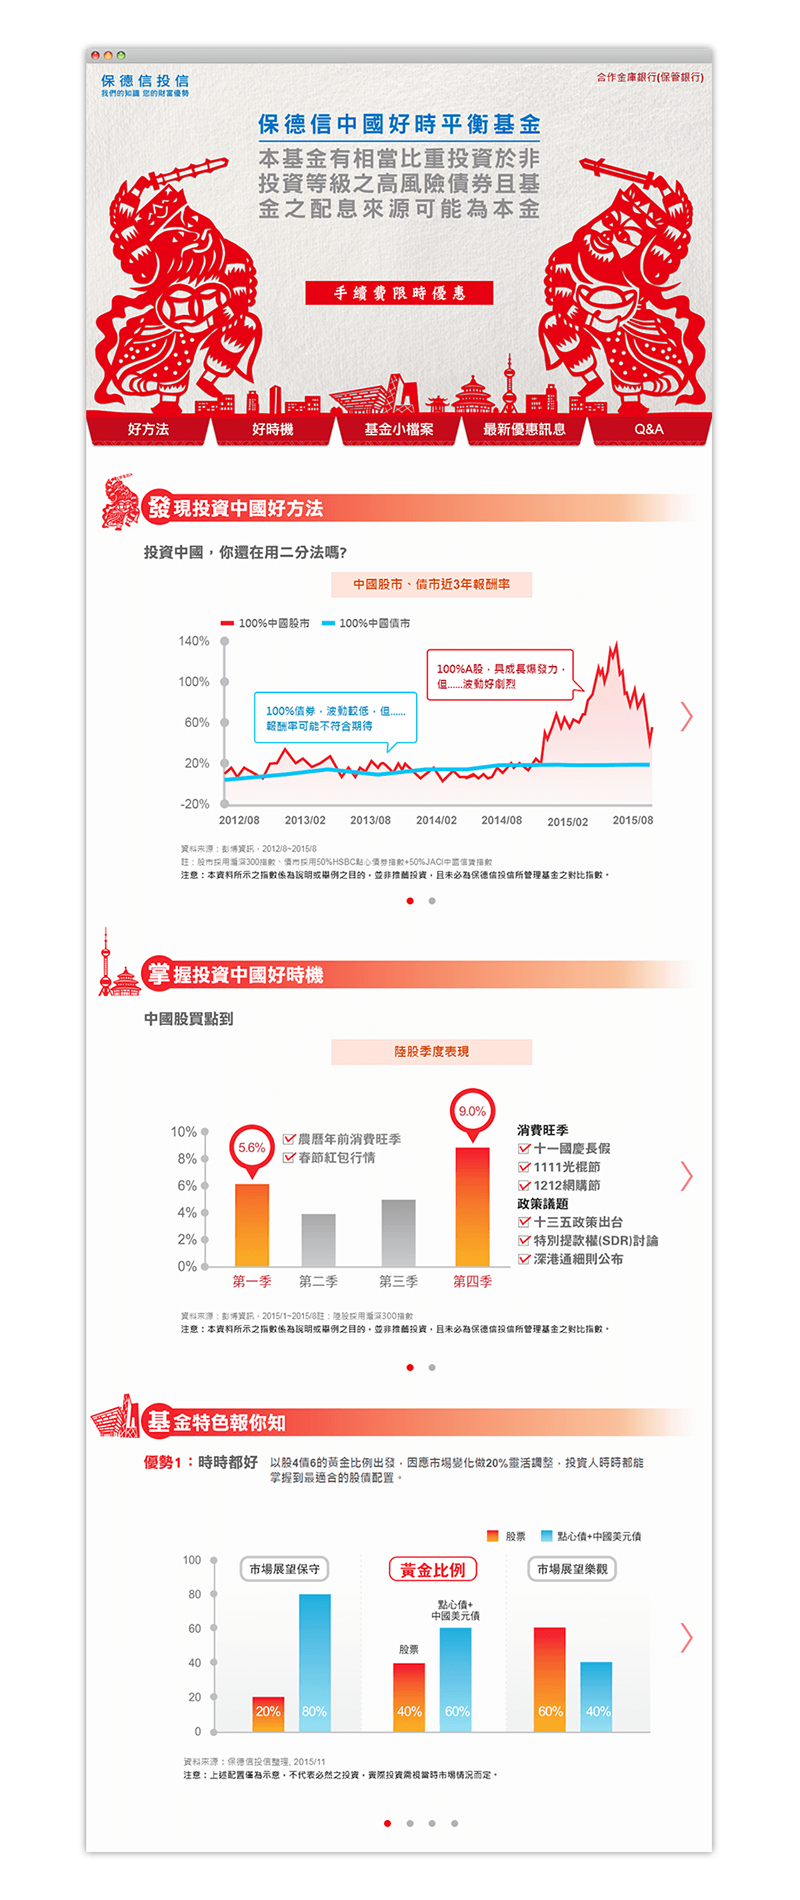 保德信投信 中國好時平衡基金 IPO 活動網站 網頁設計